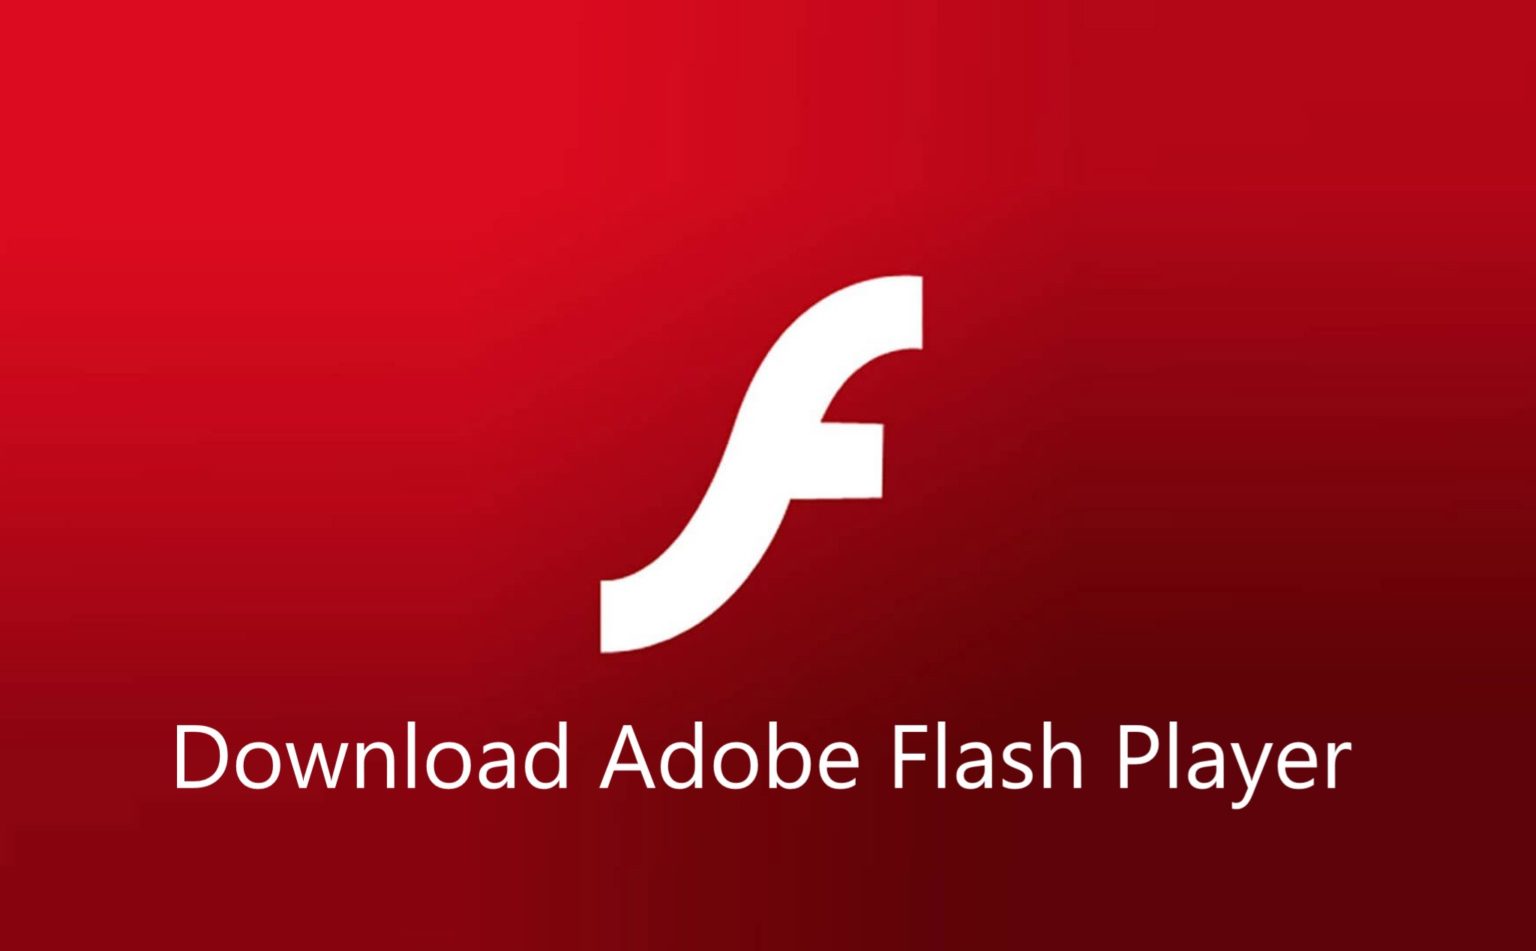 adobe flash player download windows 7 offline